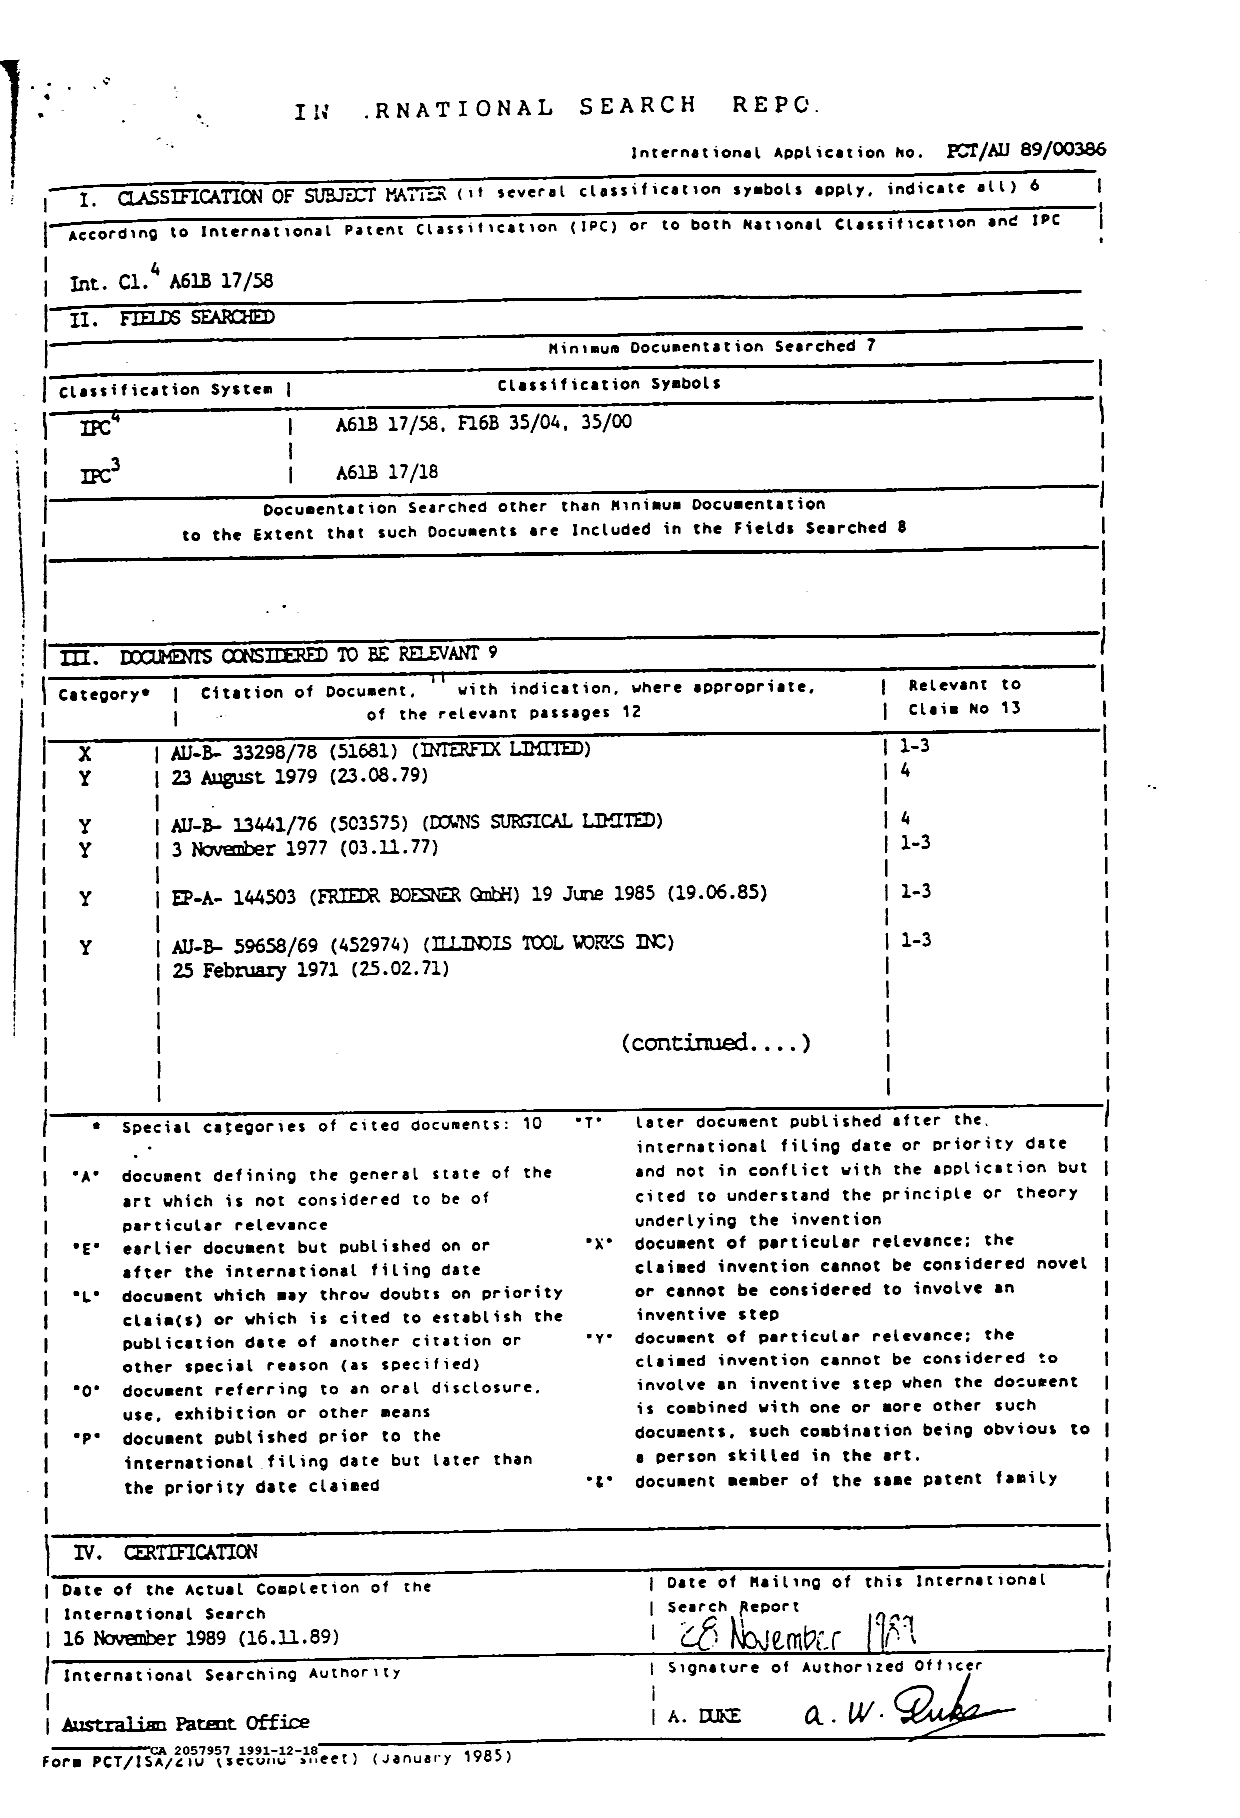 Document de brevet canadien 2057957. Rapport d'examen préliminaire international 19911218. Image 1 de 3